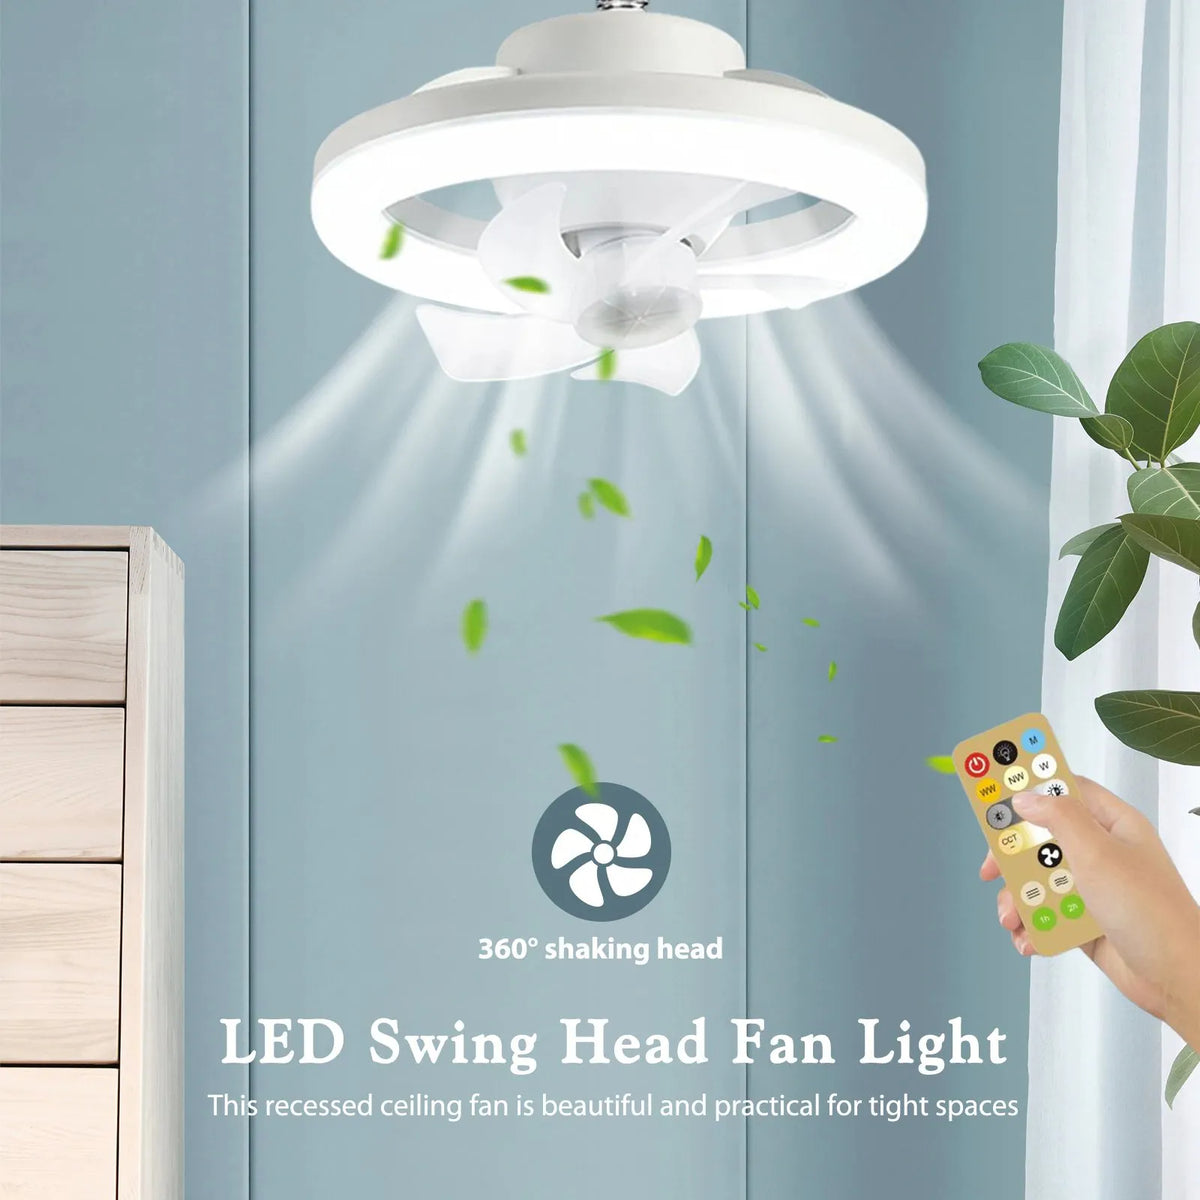 LED Swing Head Fan Light